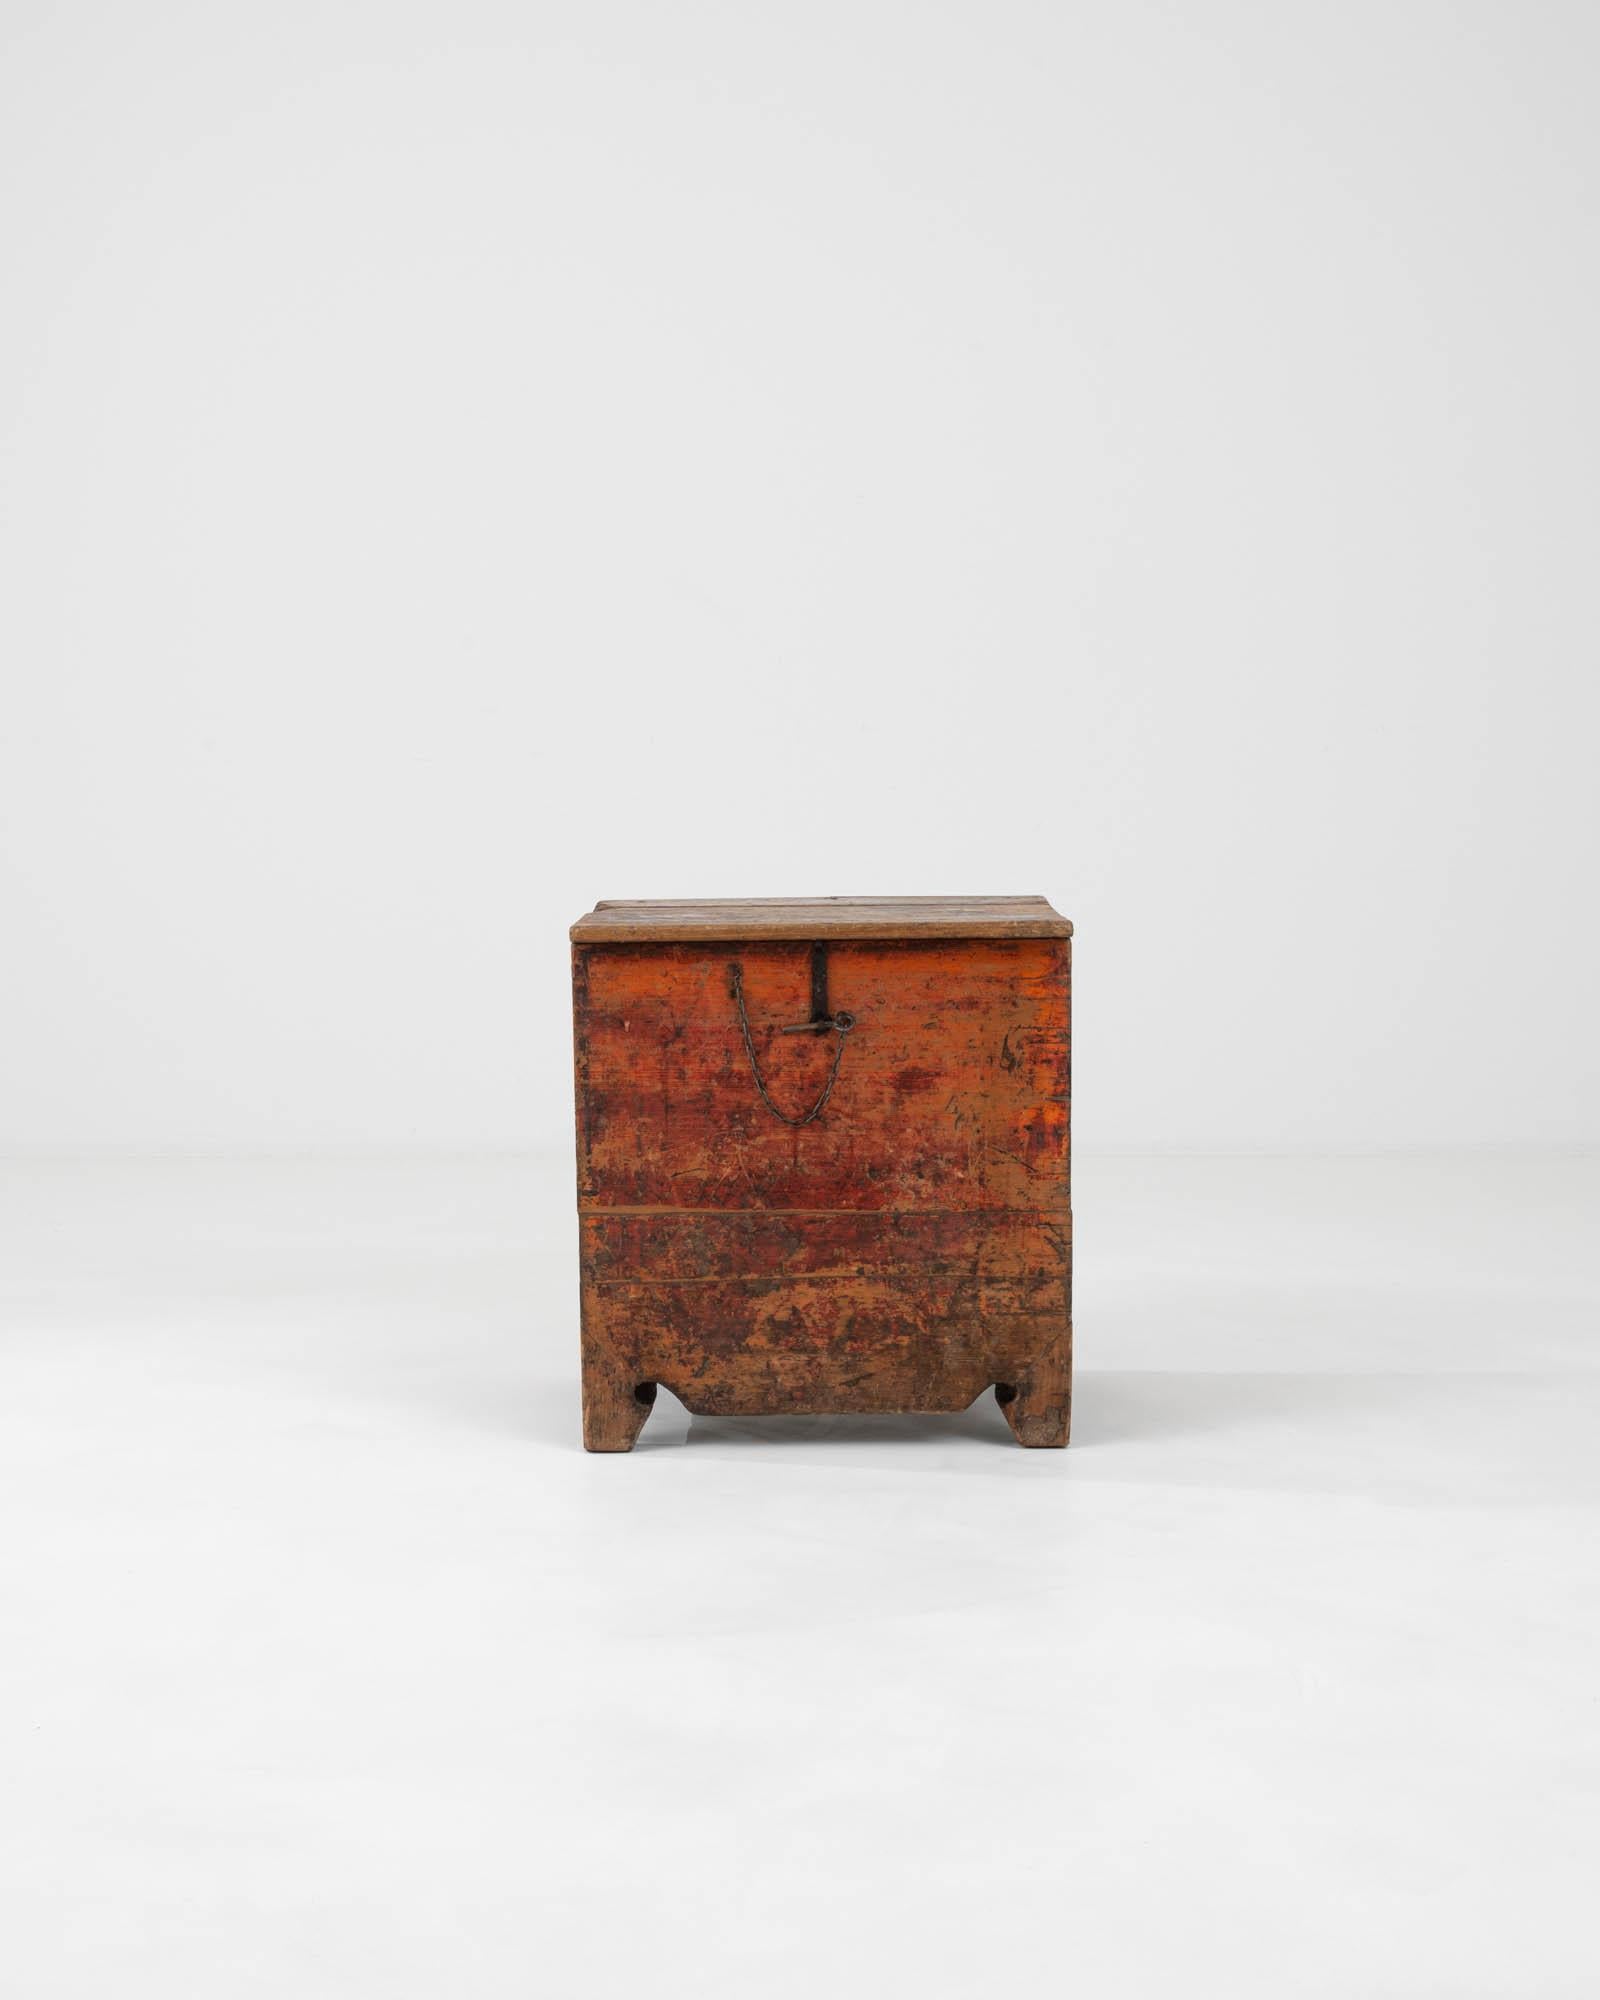 Entdecken Sie einen Schatz aus der Vergangenheit mit dieser skandinavischen Holztruhe aus dem 19. Jahrhundert, einem rustikalen Schmuckstück voller Geschichte und Charakter. Das aus Massivholz gefertigte Stück zeigt die warmen, satten Farbtöne